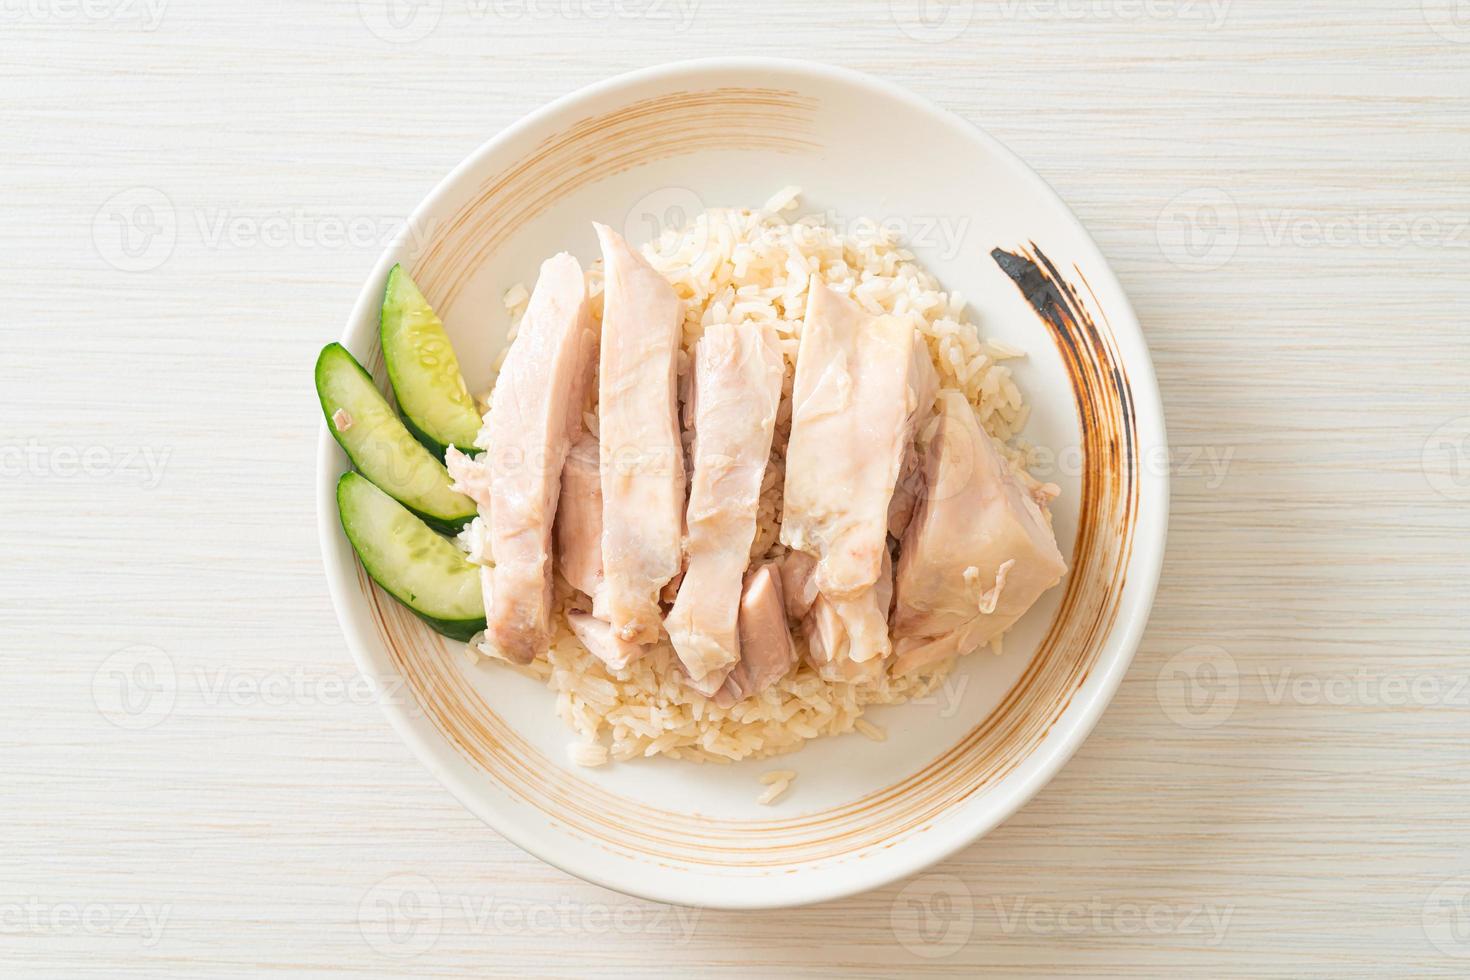 riso al pollo hainanese o riso al vapore con zuppa di pollo foto